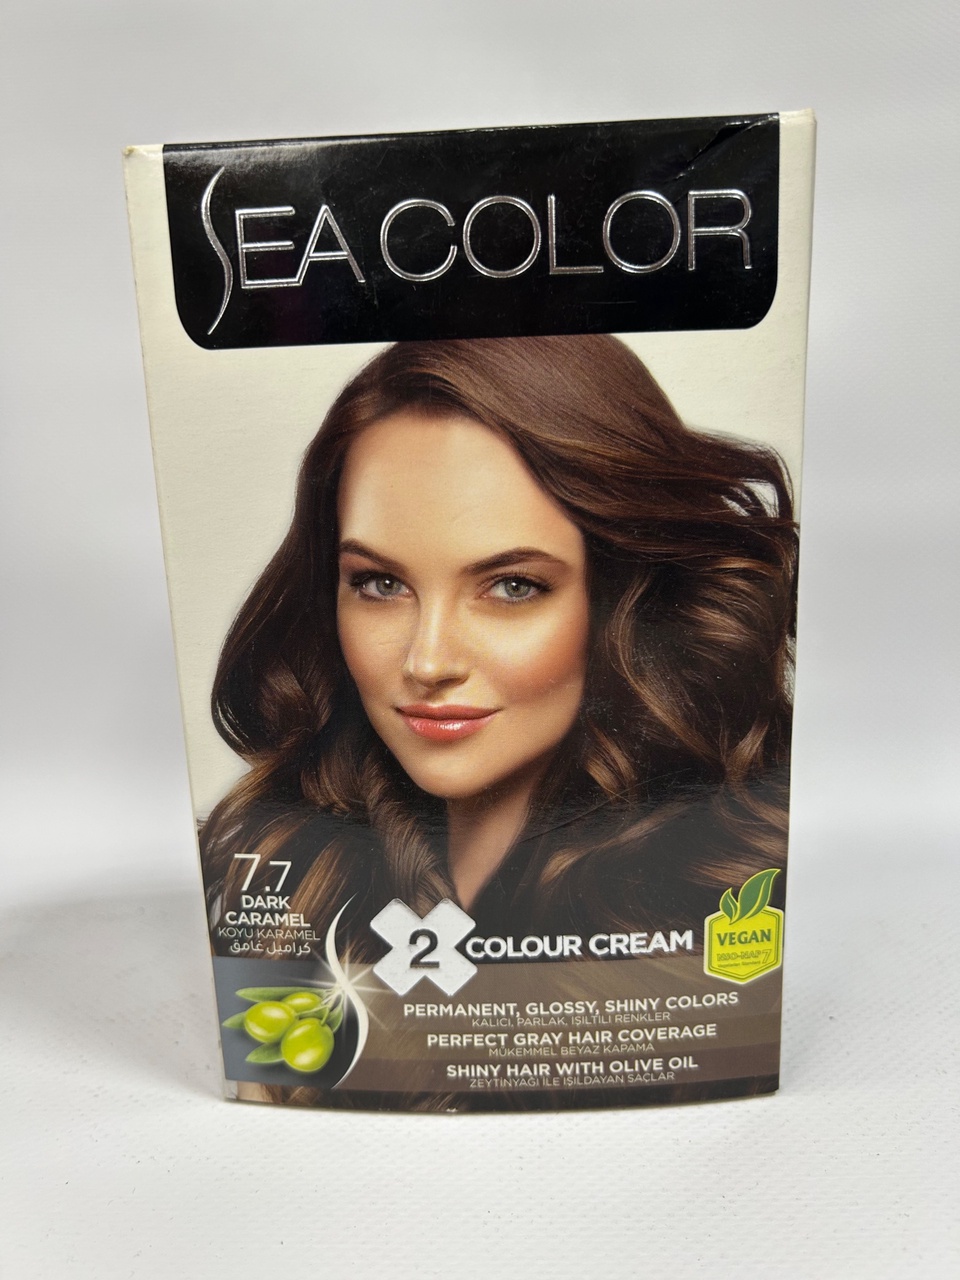 Sea Color 7.7 Краска д/волос «Темная карамель» - 300 ₽, заказать онлайн.